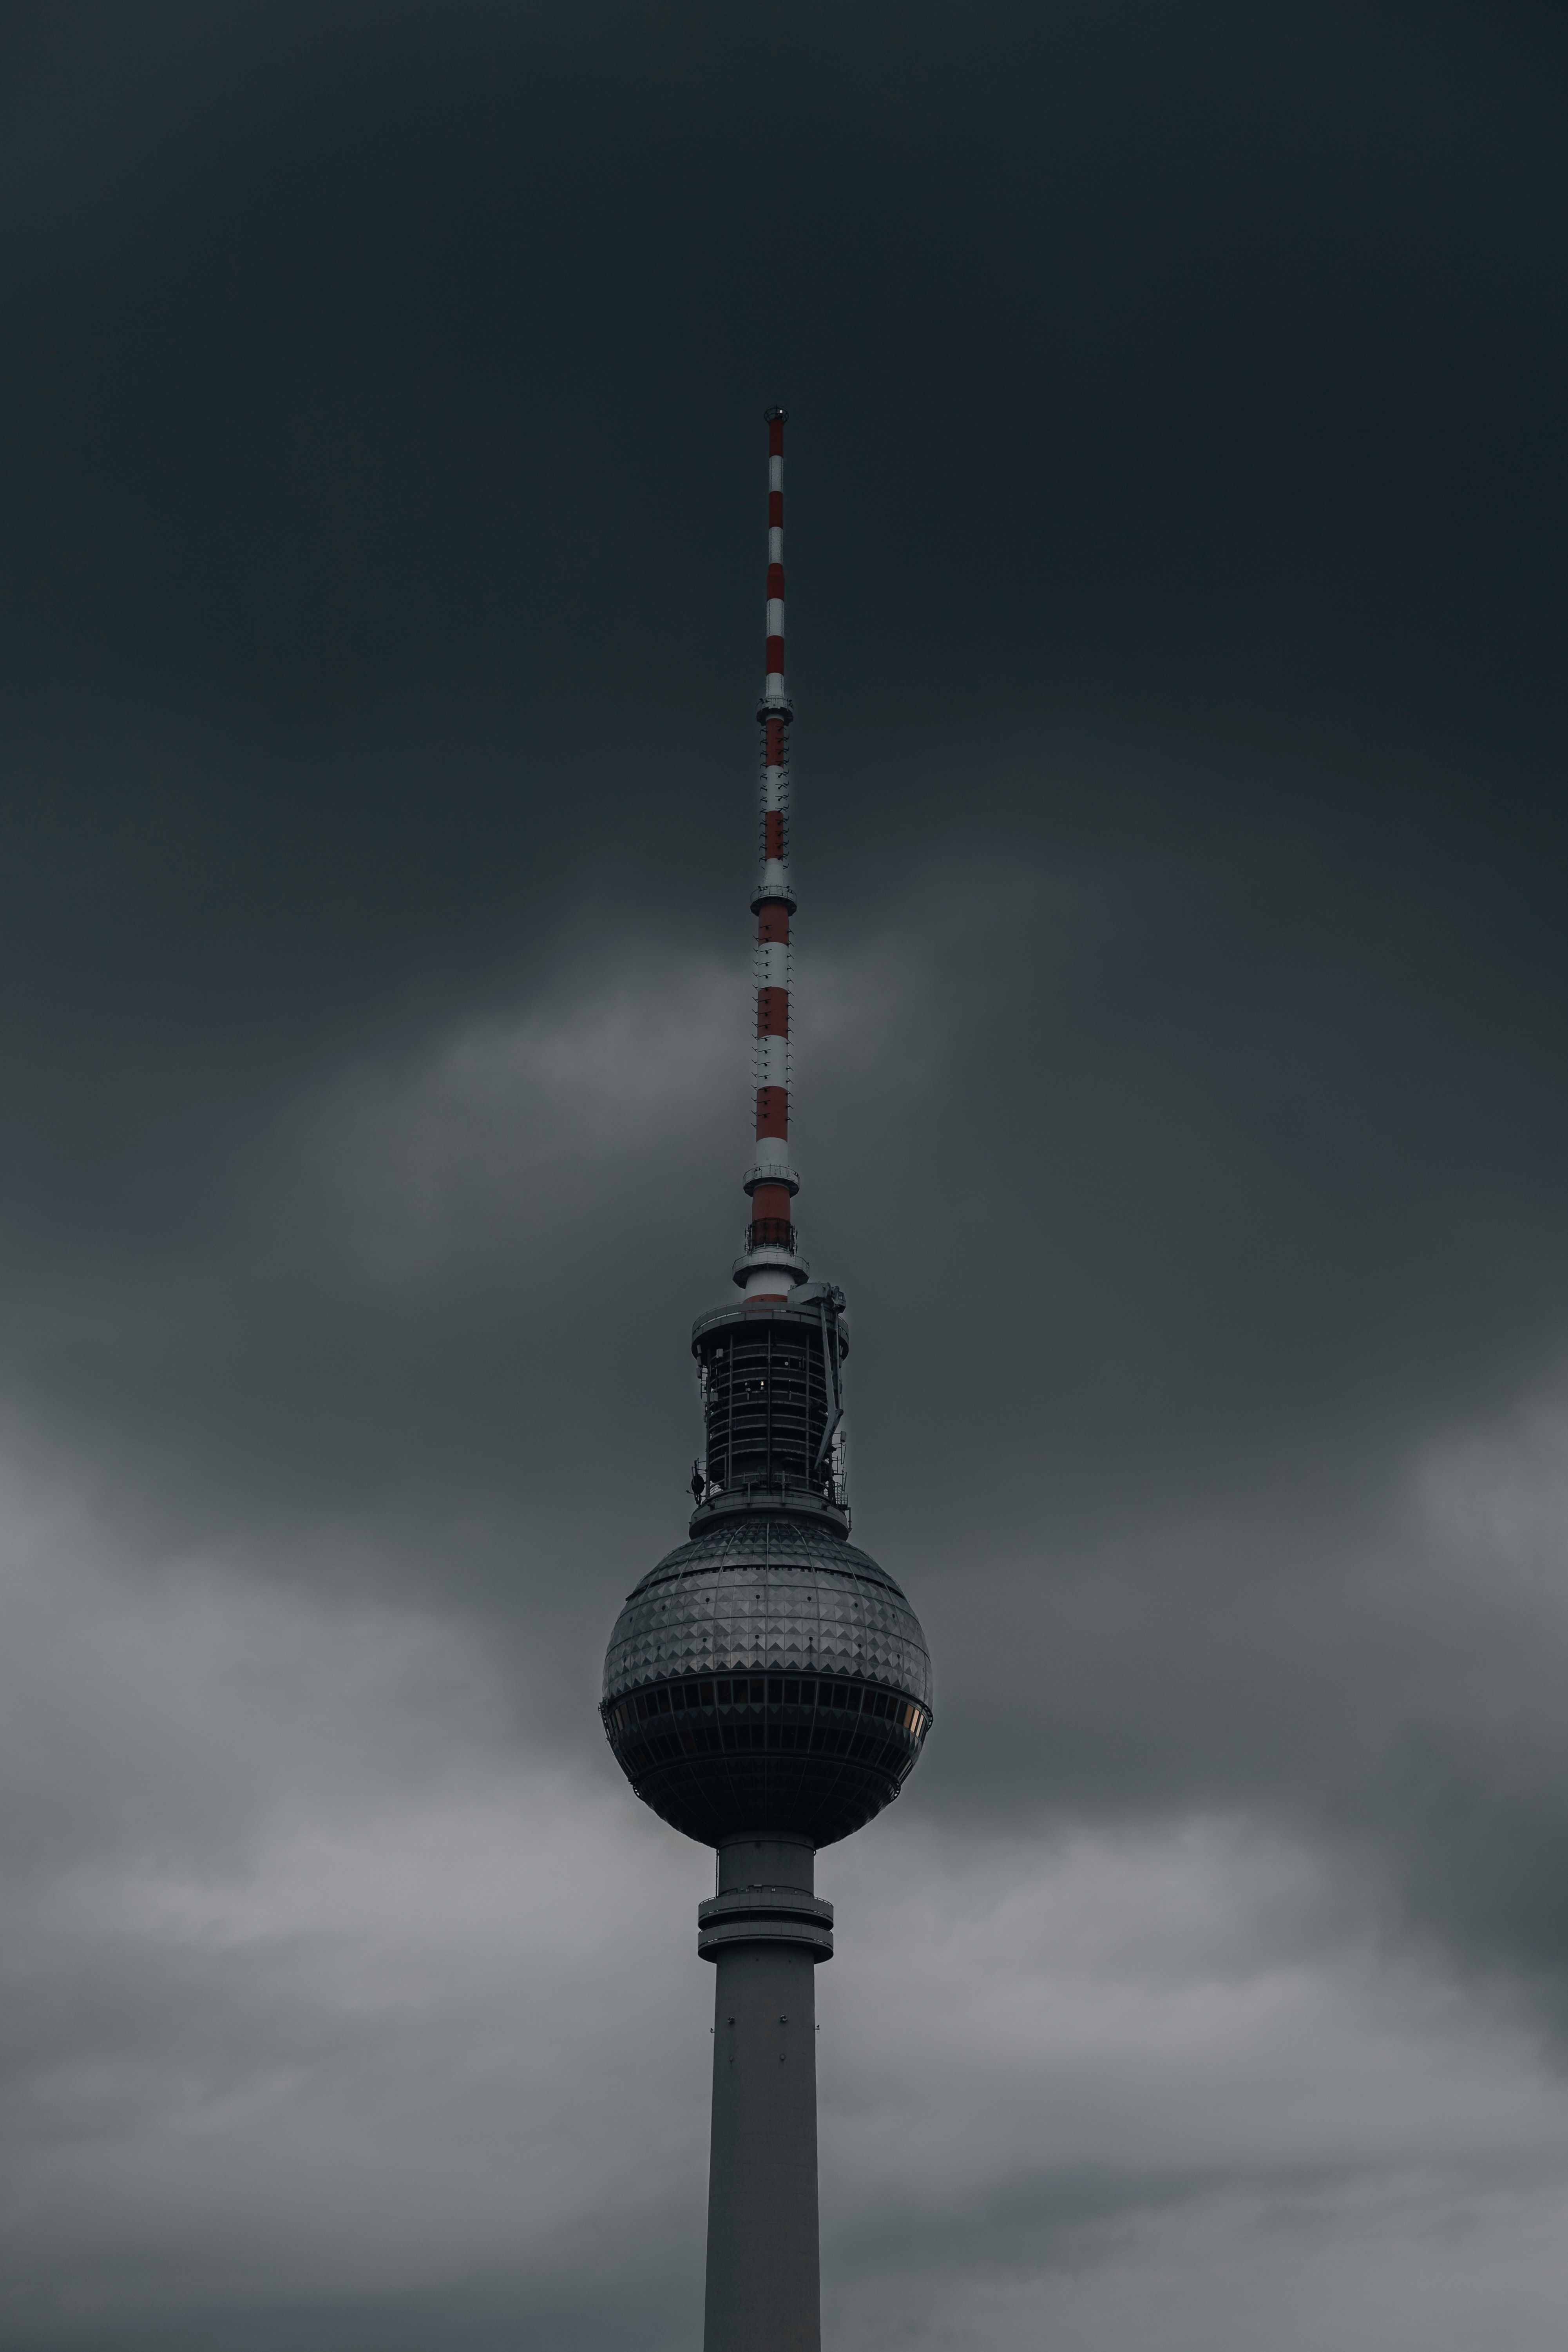  Berlin Hintergrundbild 4002x6003. Berliner Fernsehturm Bilder Und Fotos · Kostenlos Downloaden · Stock Fotos